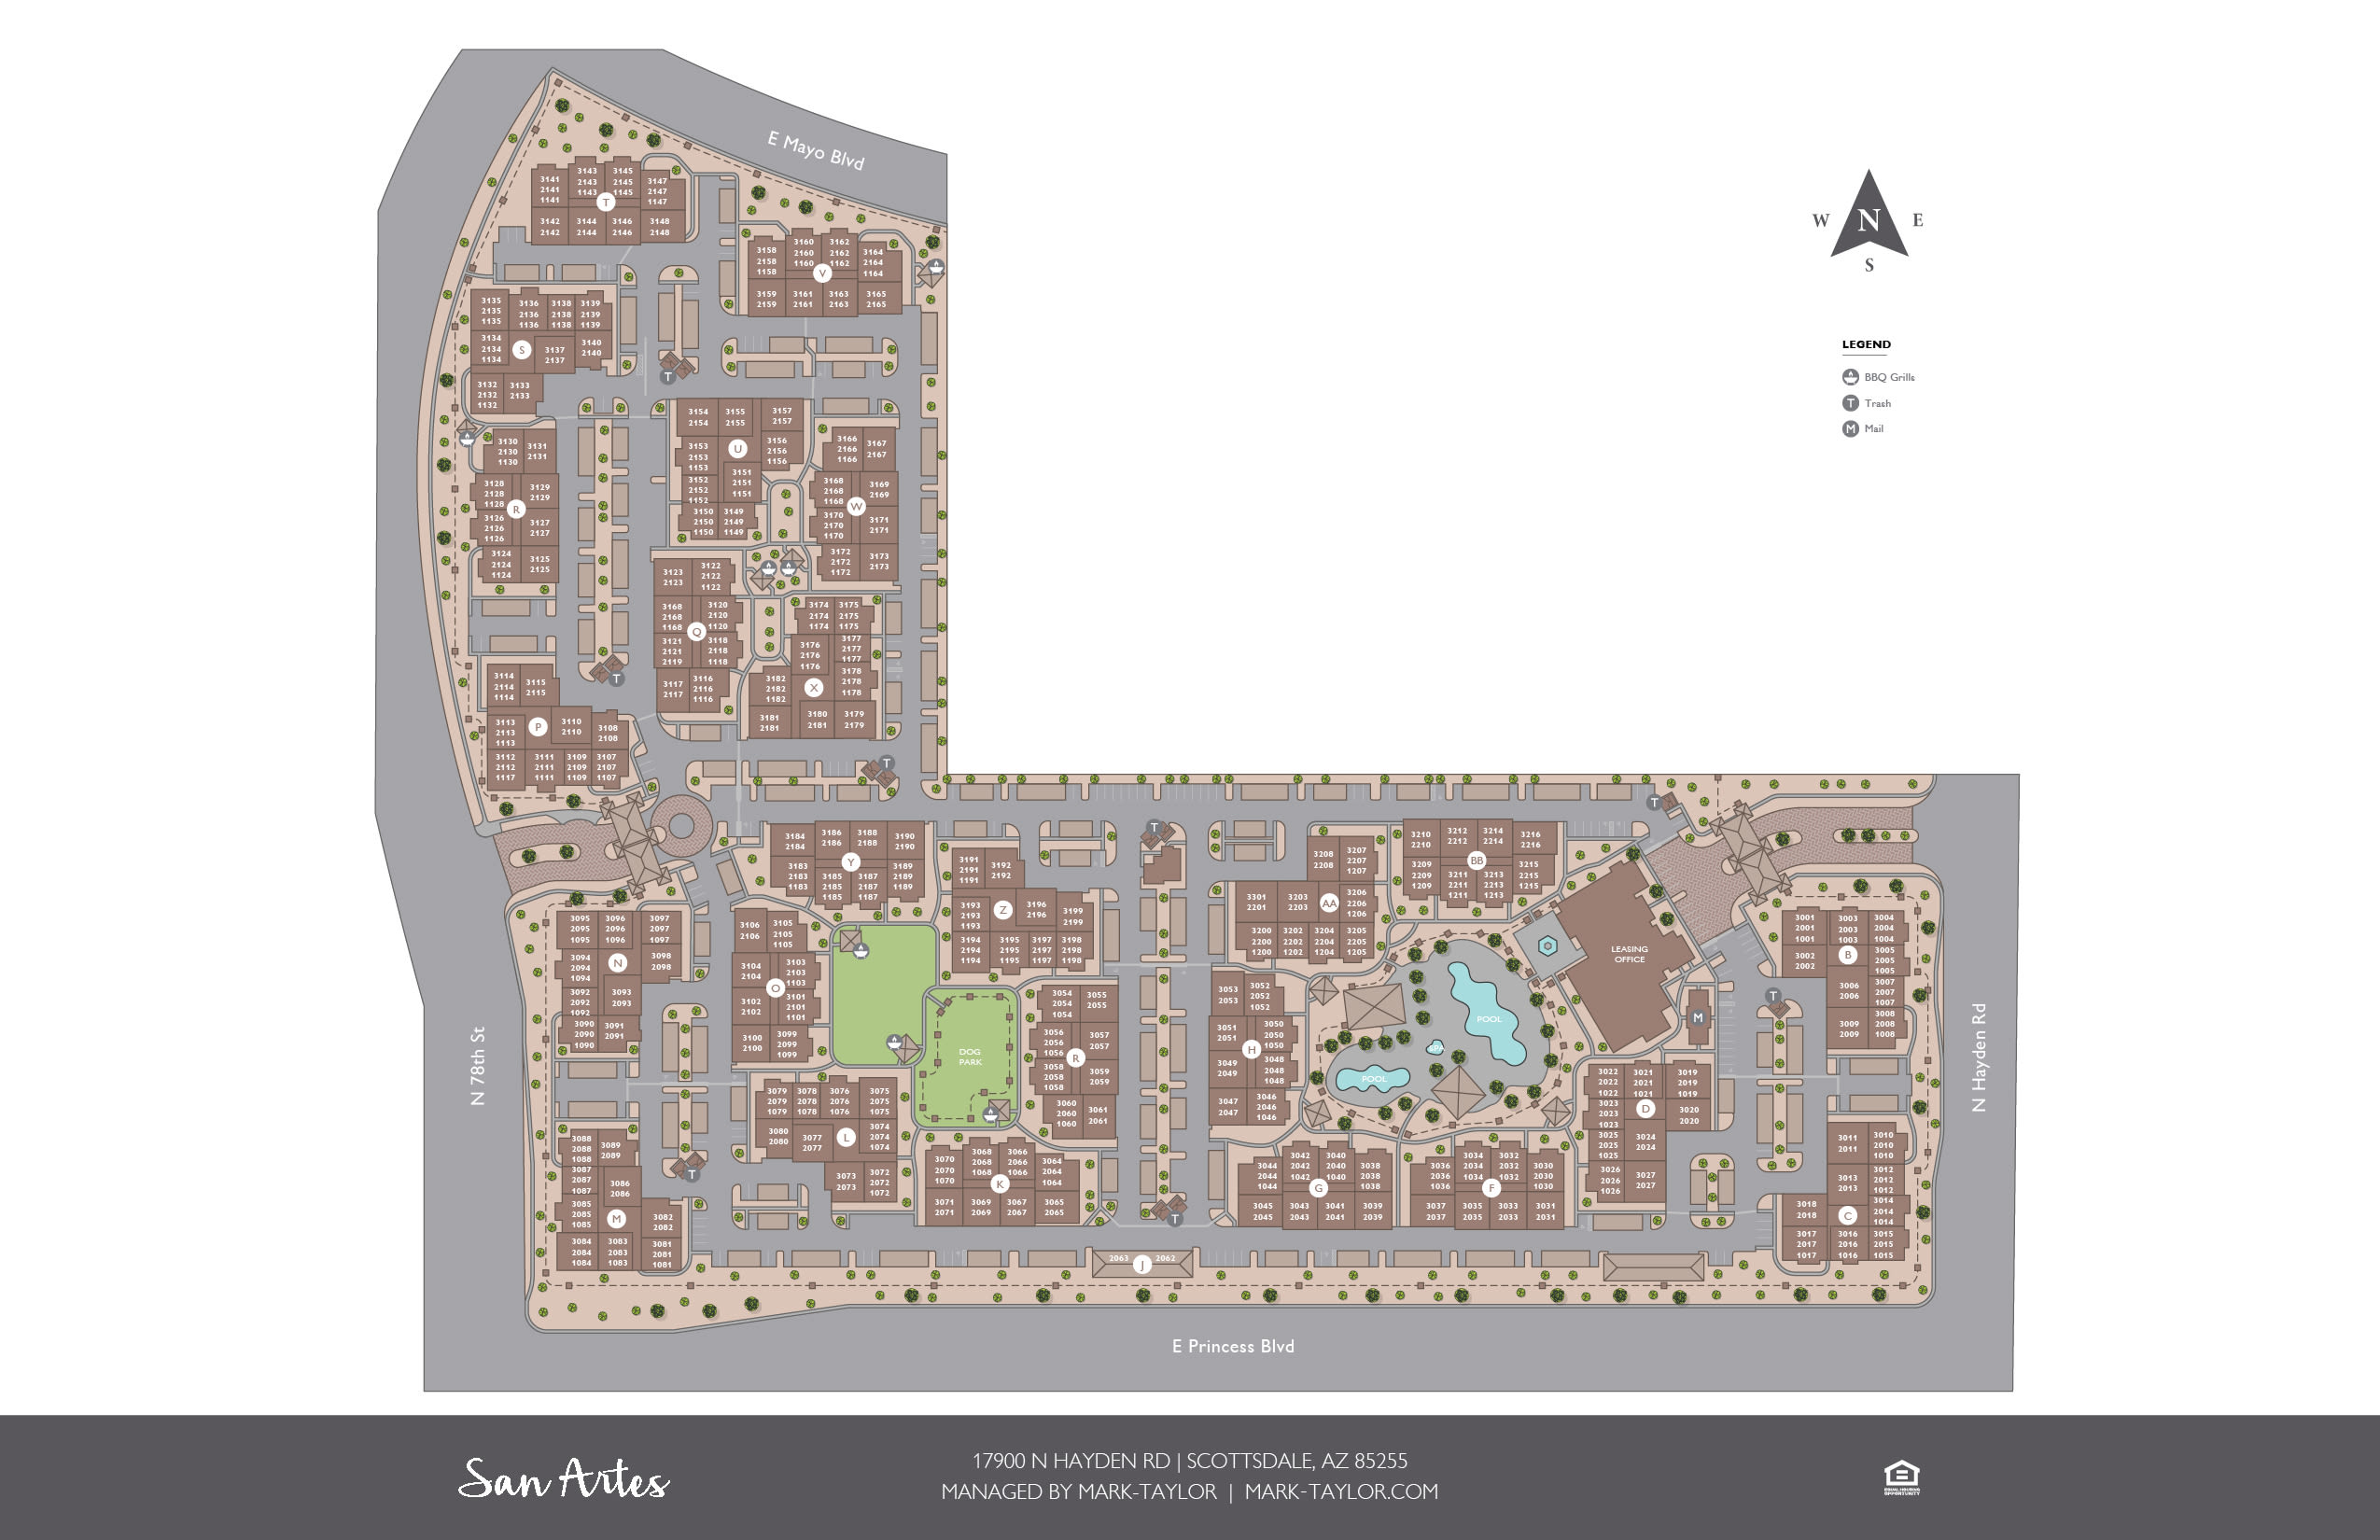 San Artes site plan